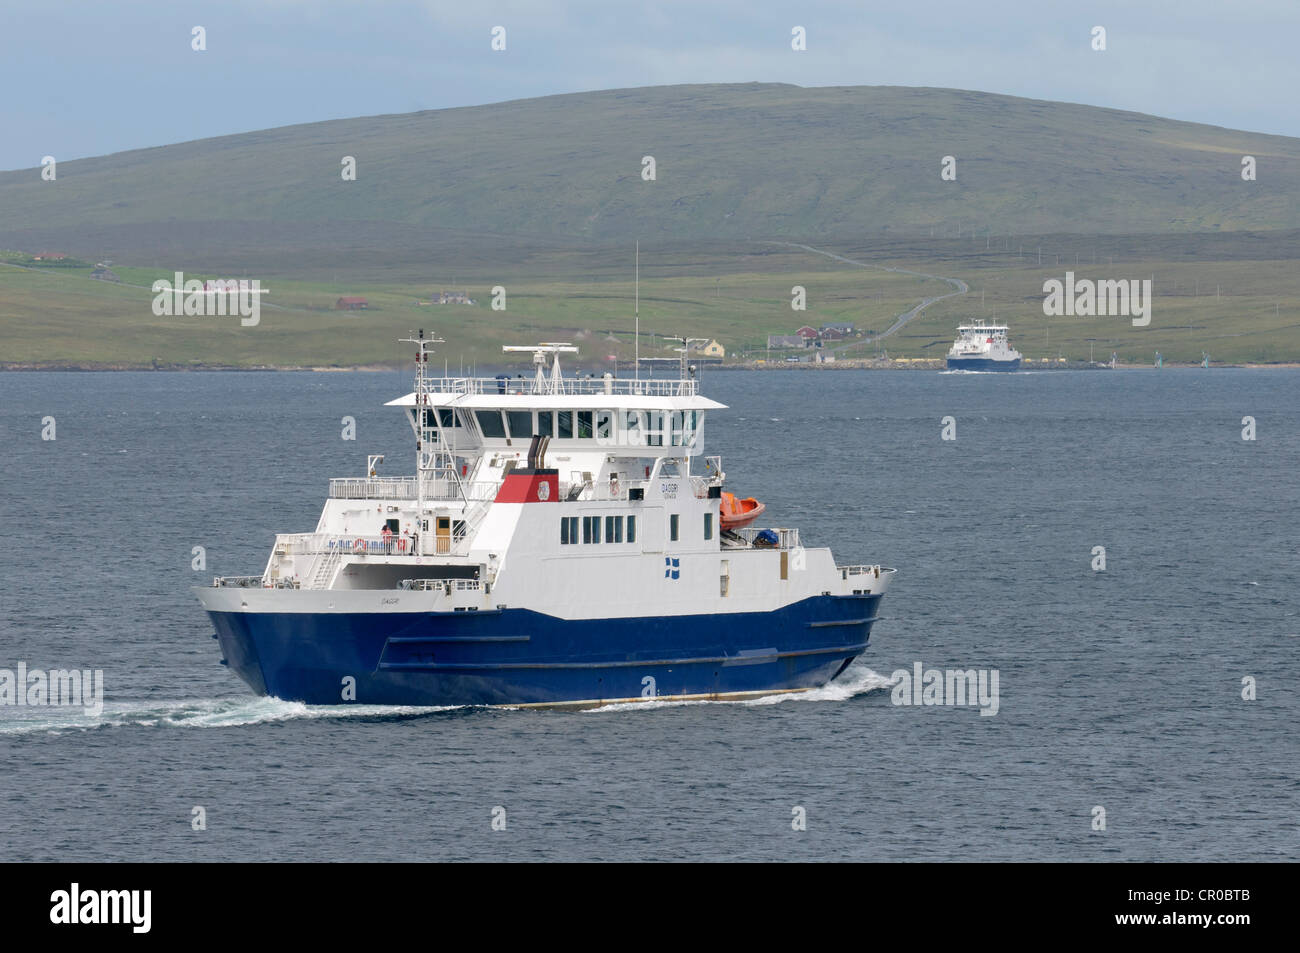 Traghetti che attraversano Yell Sound nelle isole Shetland. Traghetto 'Daggri' in primo piano. Villaggio di Ulsta e isola di Yell sfondo. Foto Stock